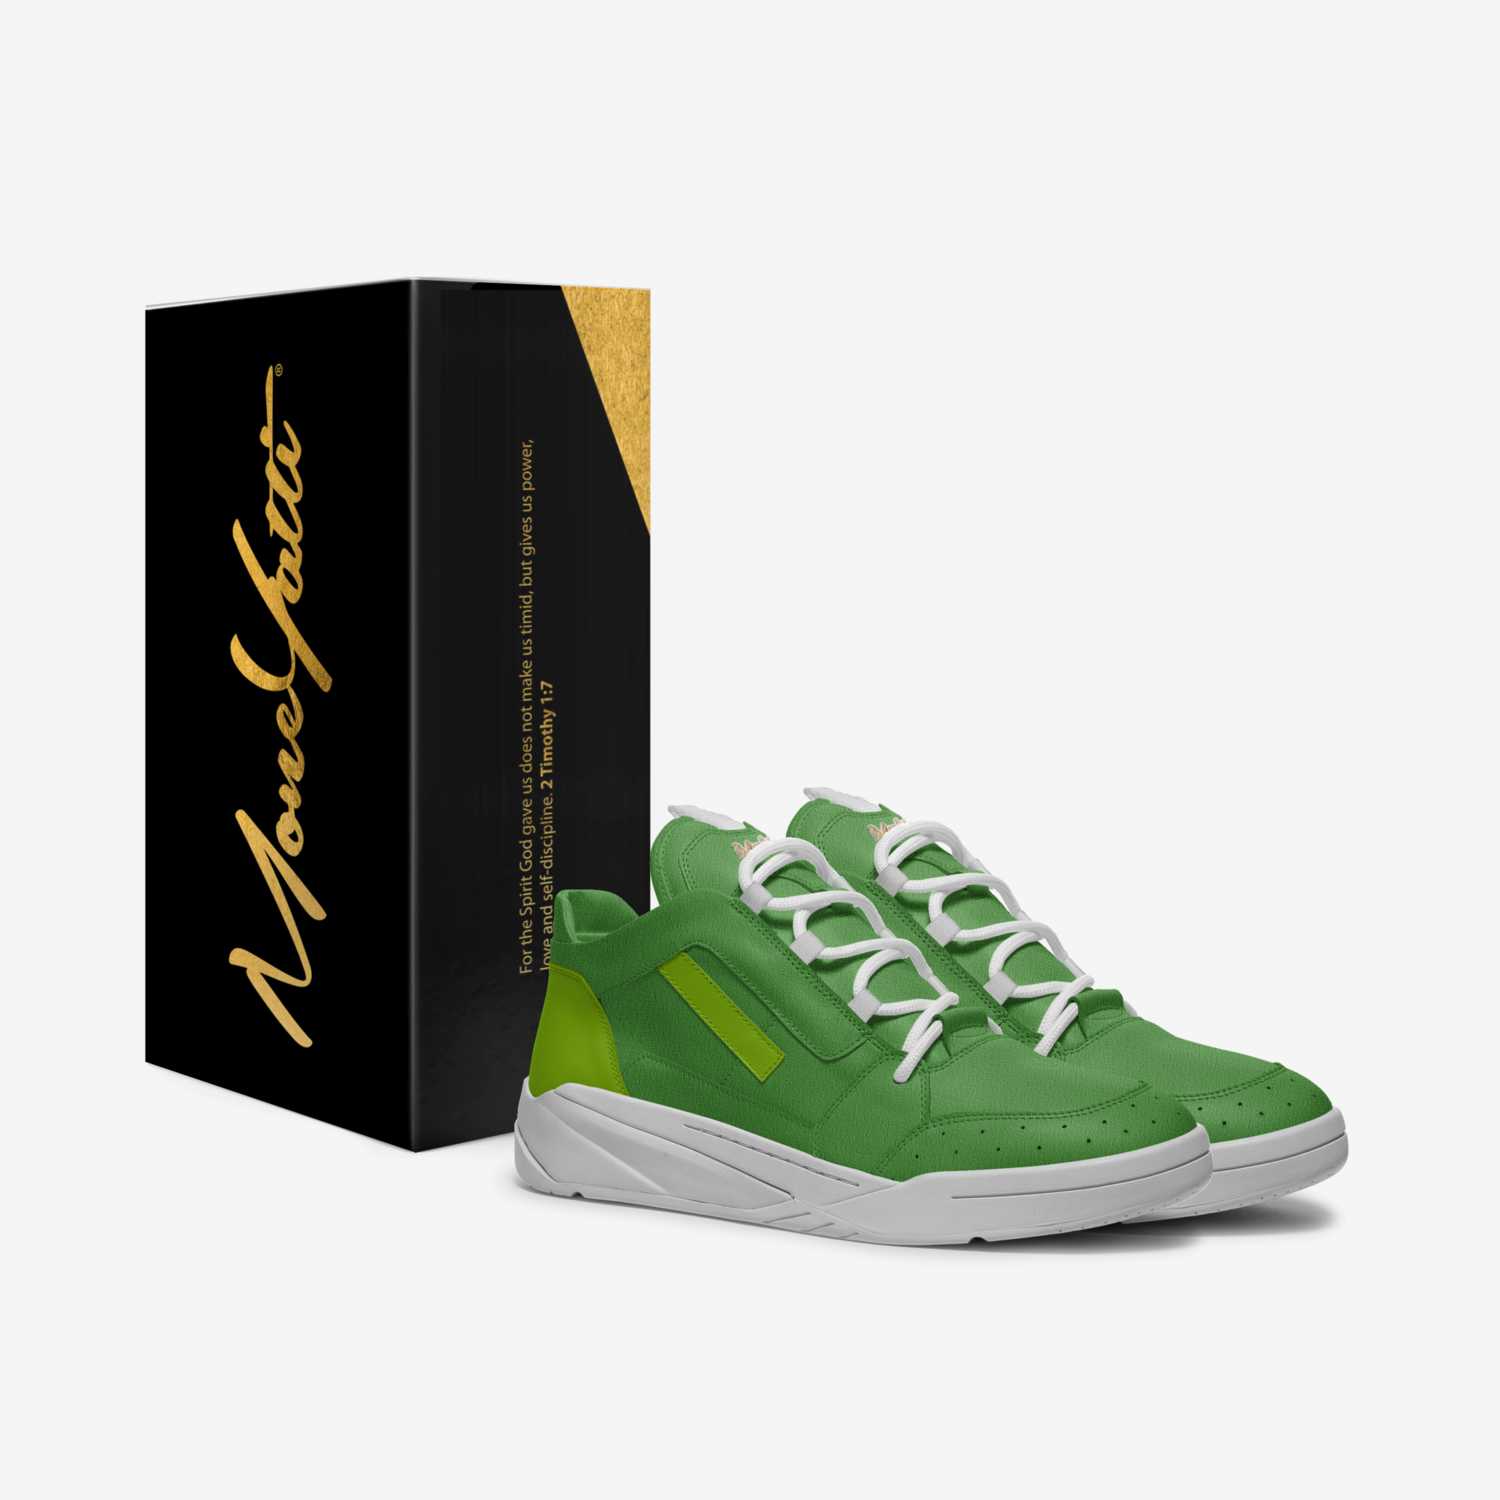 MONEYATTI TURBO 015 custom made in Italy shoes by Moneyatti Brand | Box view